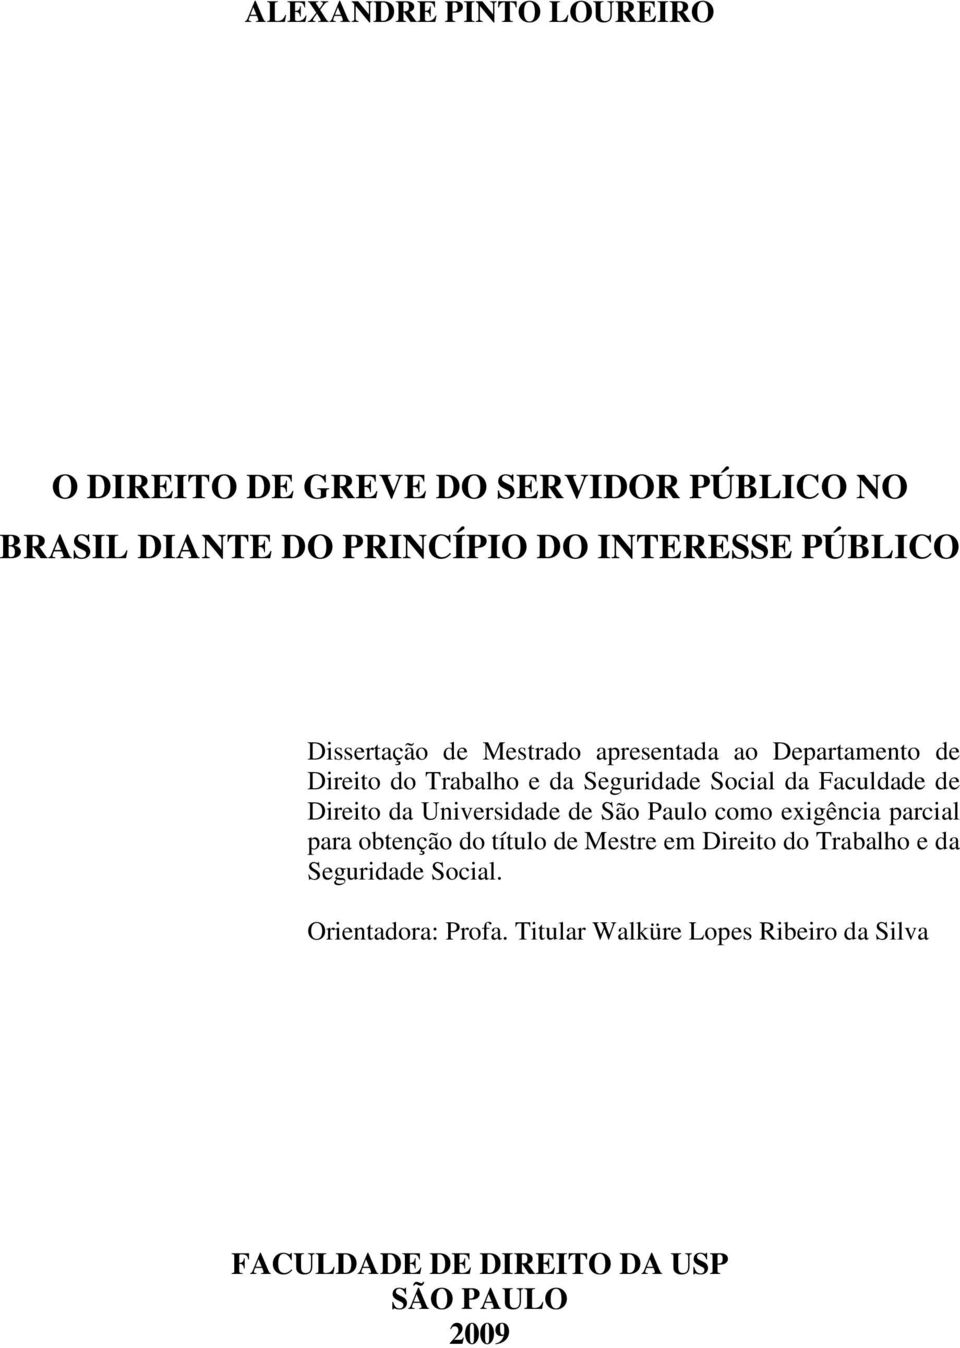 Direito da Universidade de São Paulo como exigência parcial para obtenção do título de Mestre em Direito do Trabalho